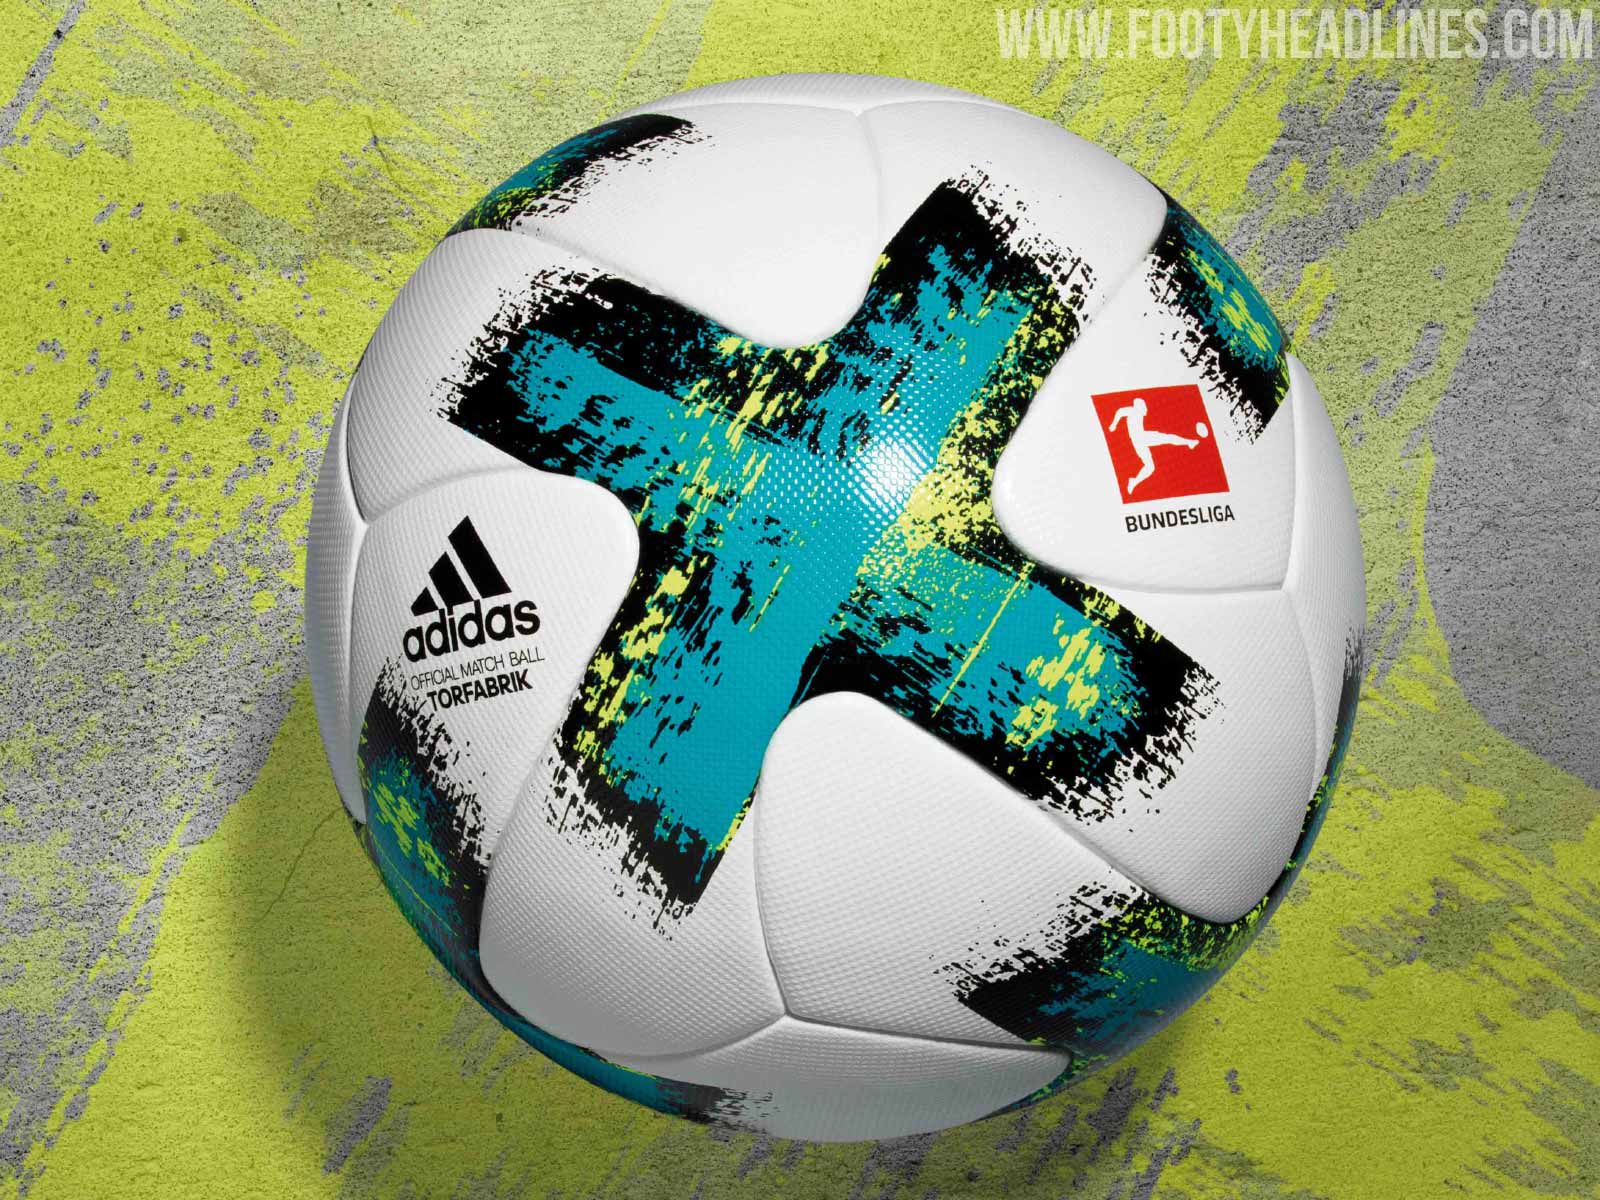 Last Made Adidas - Adidas Bundesliga Ball Released - Footy Headlines